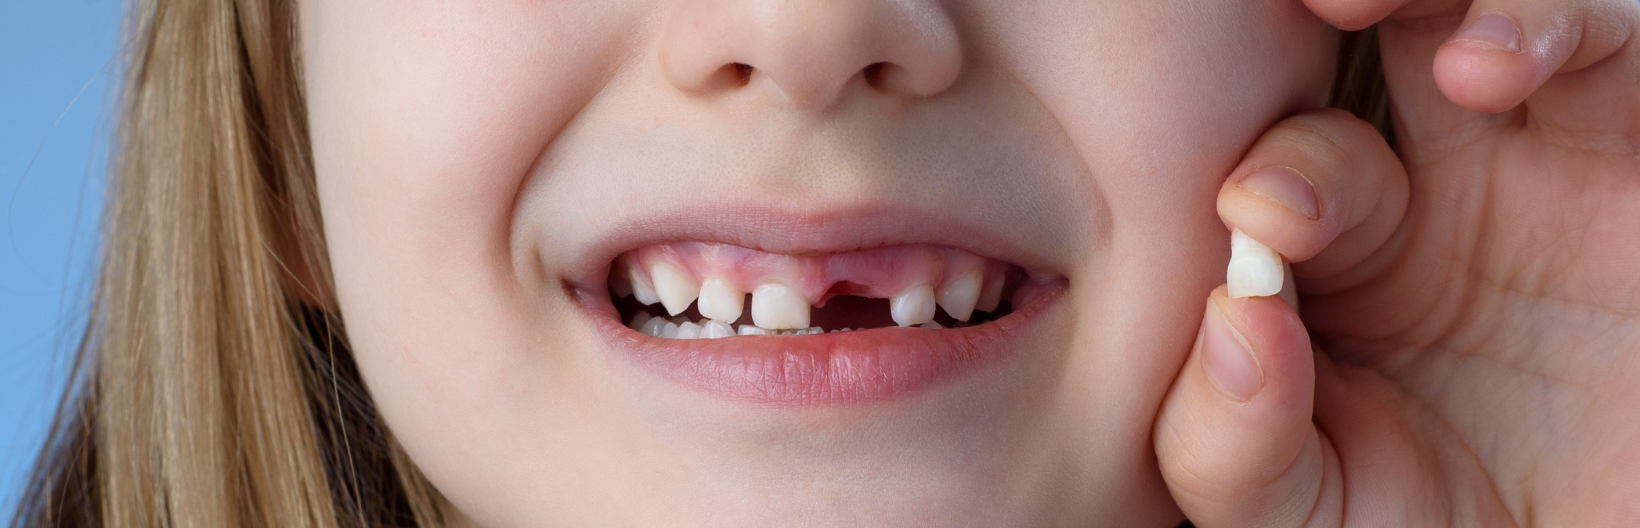 Ребенок без молочных зубов. Молочный зуб до 1 лет с мами. Молочный зуб до 1 лет с мами Сток.